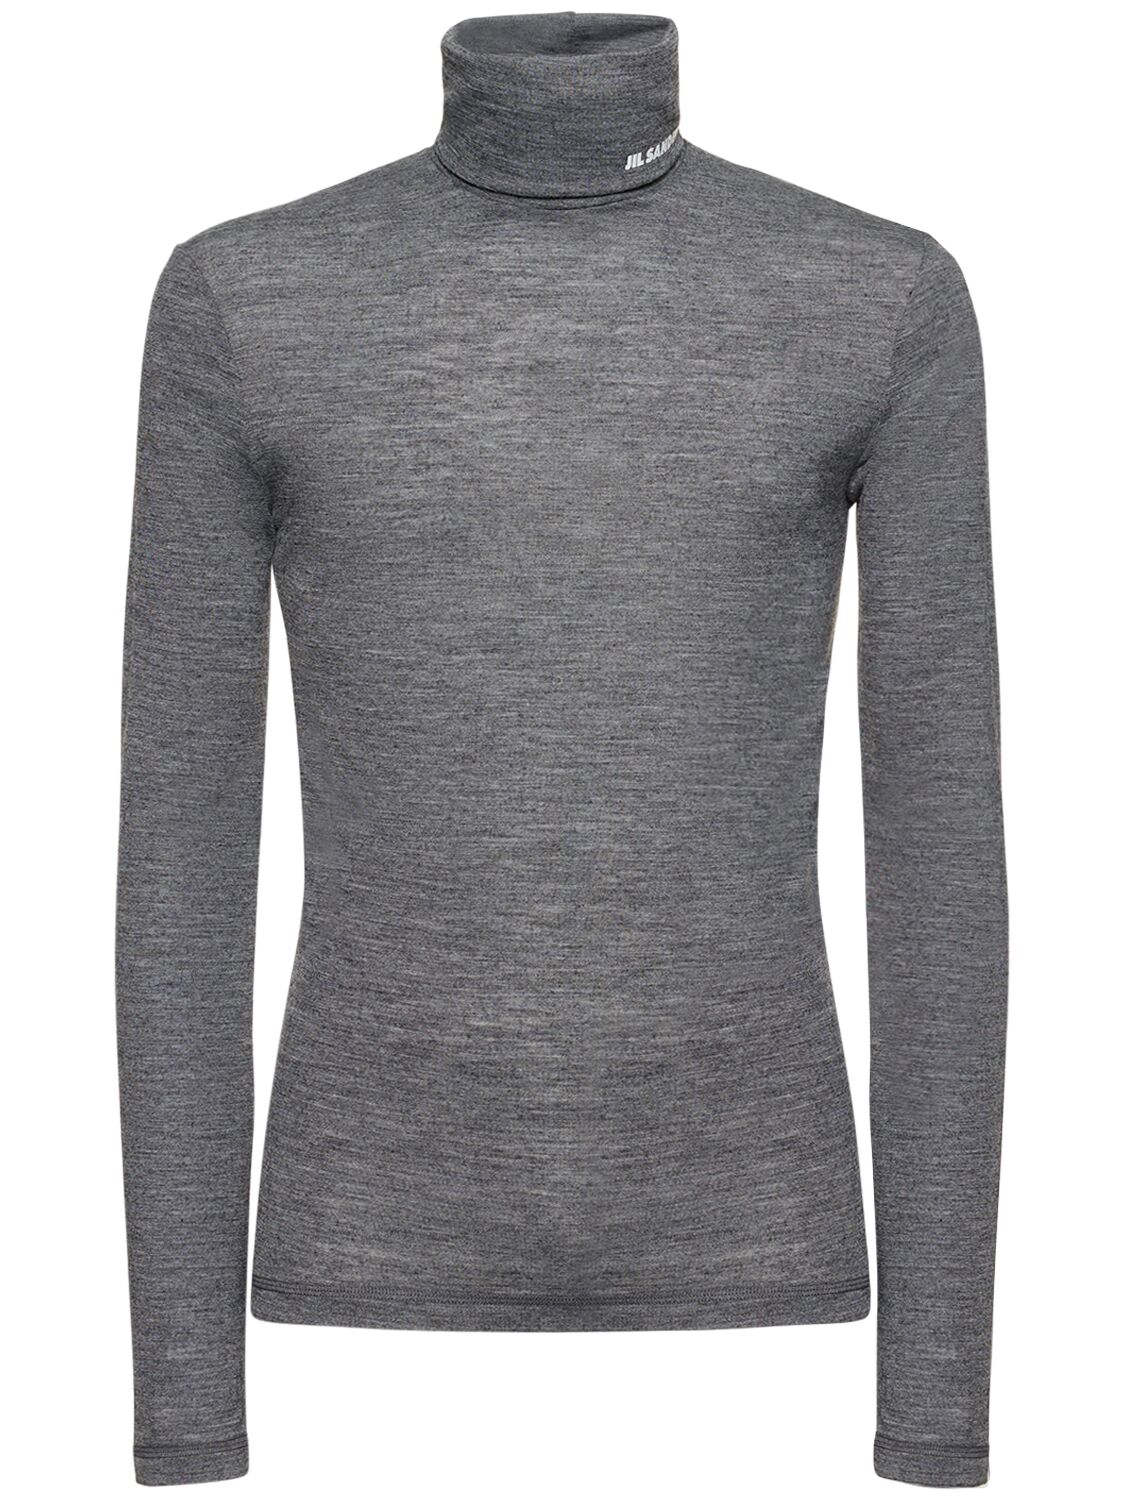 Wool Jersey Turtleneck T-shirt – MEN > CLOTHING > T-SHIRTS